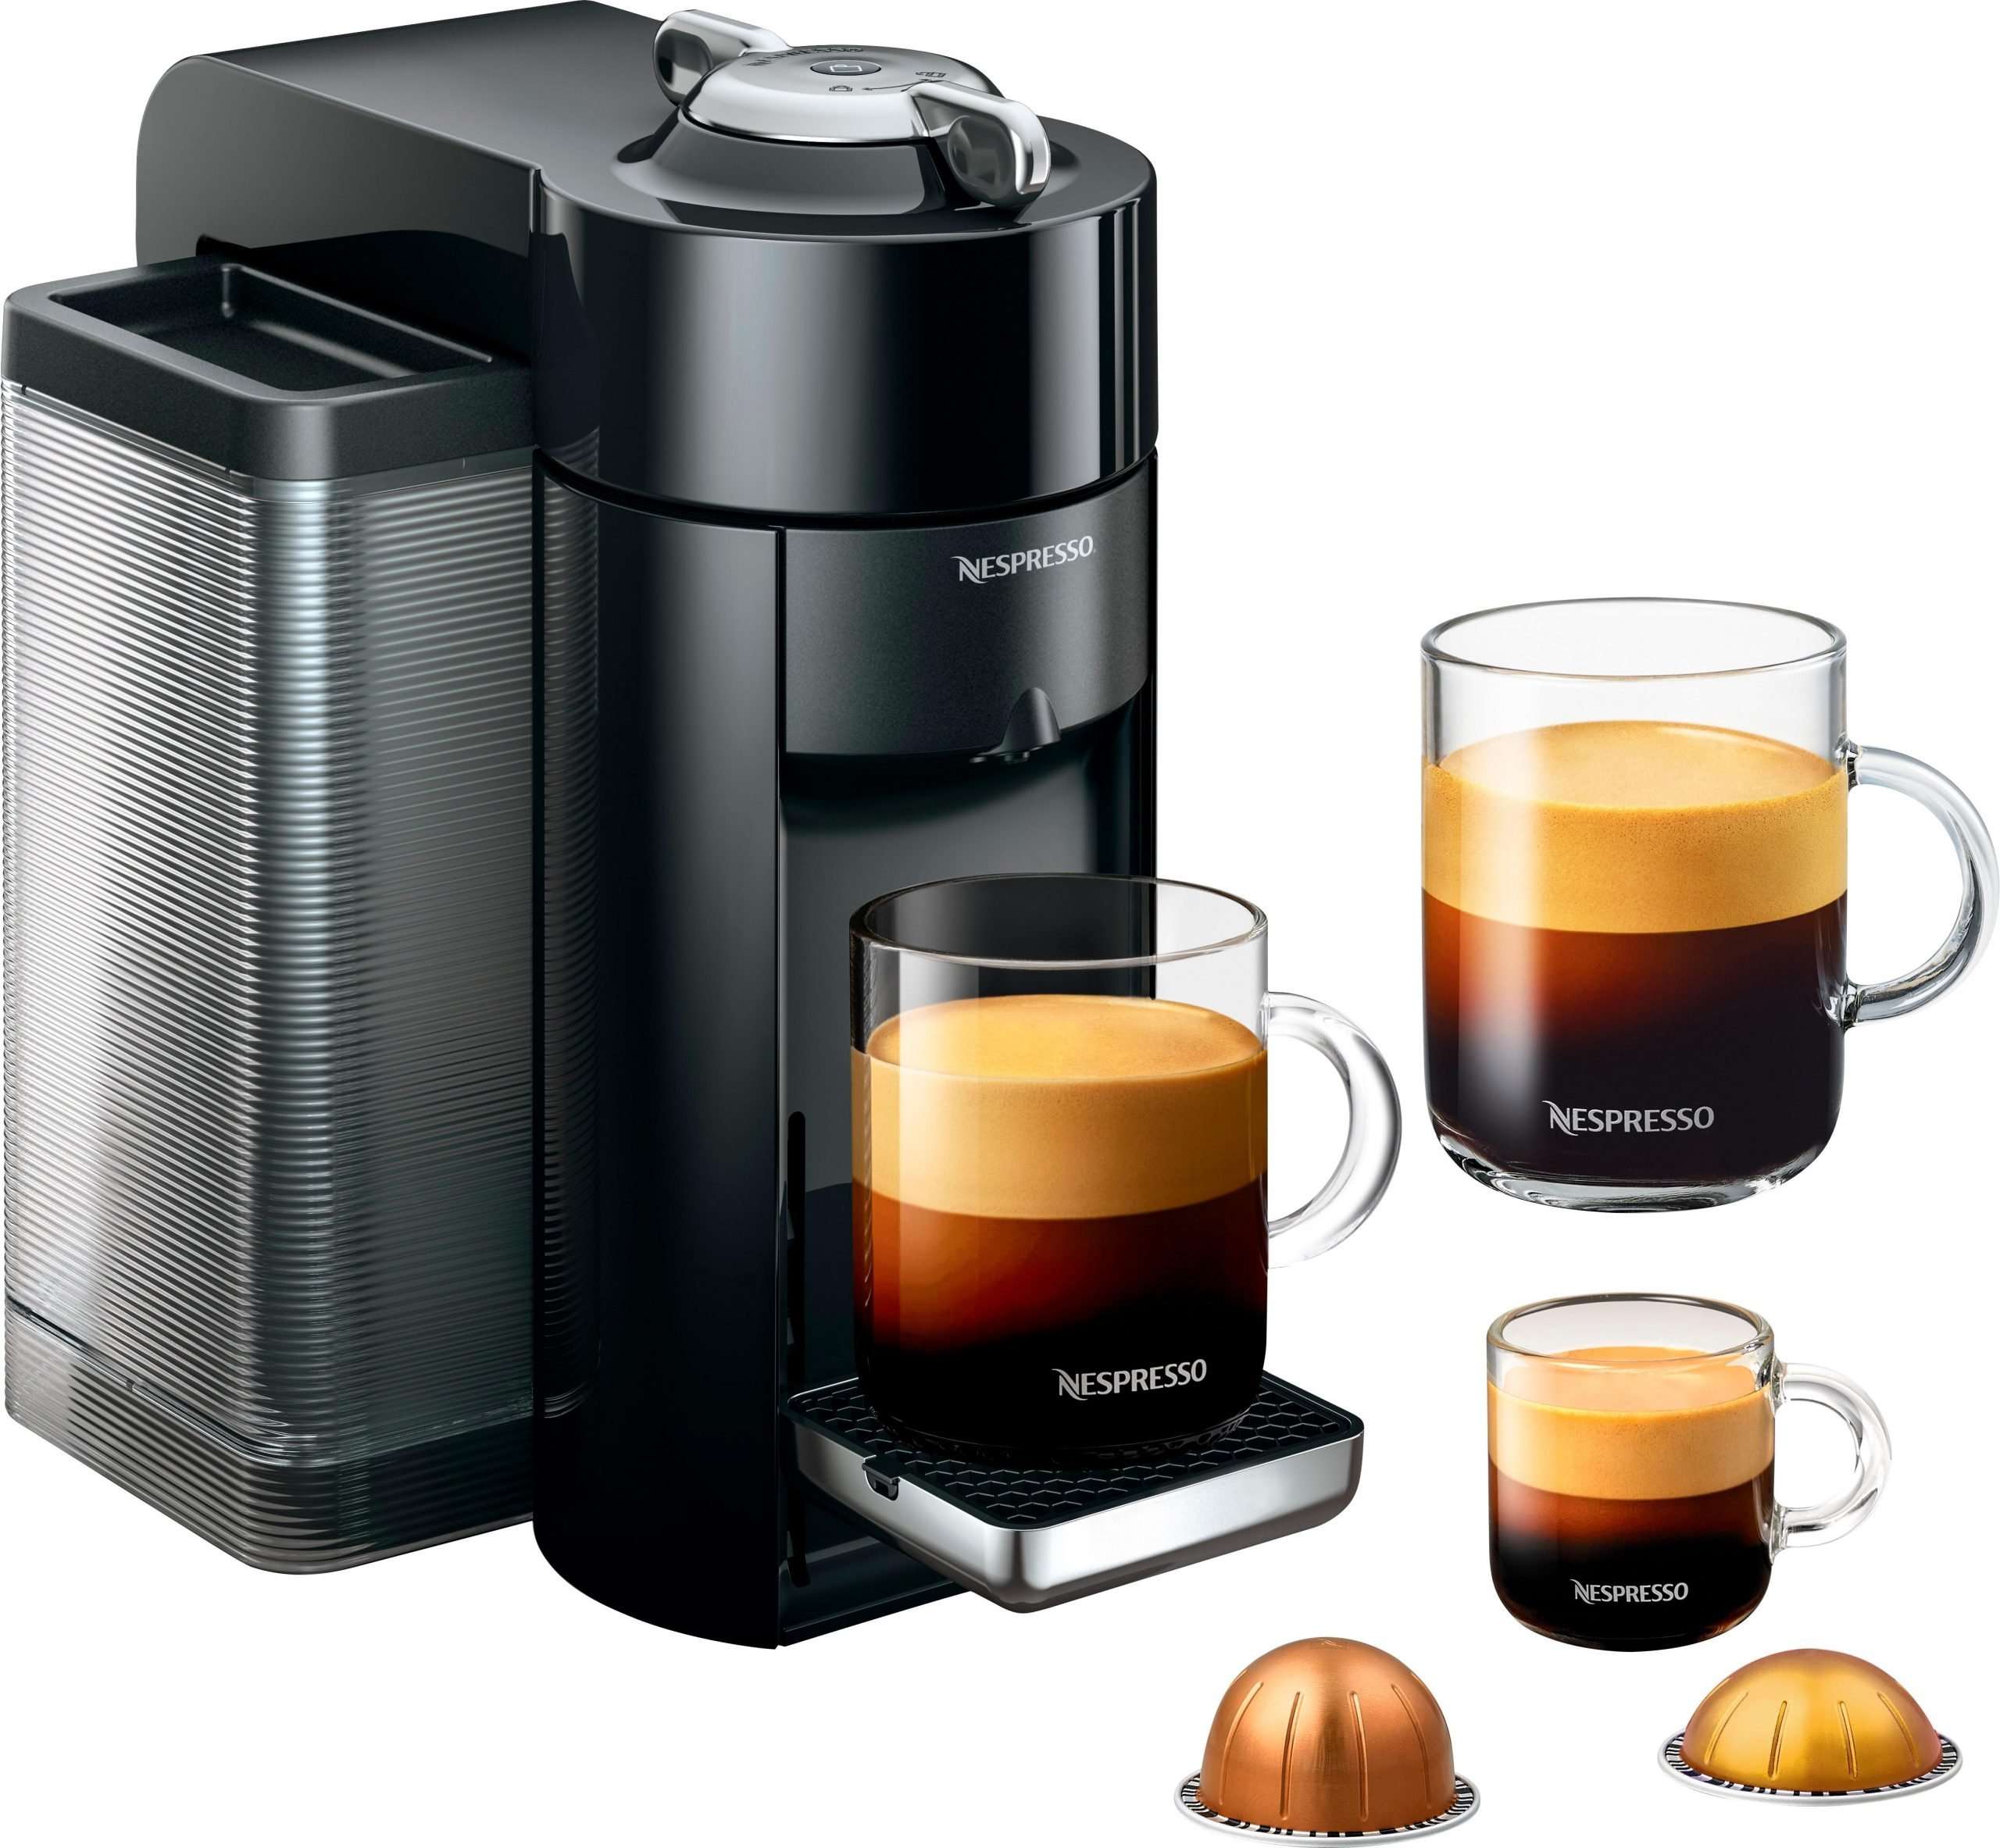 Brand New Nespresso Vertuo Coffee Maker and Espresso ...